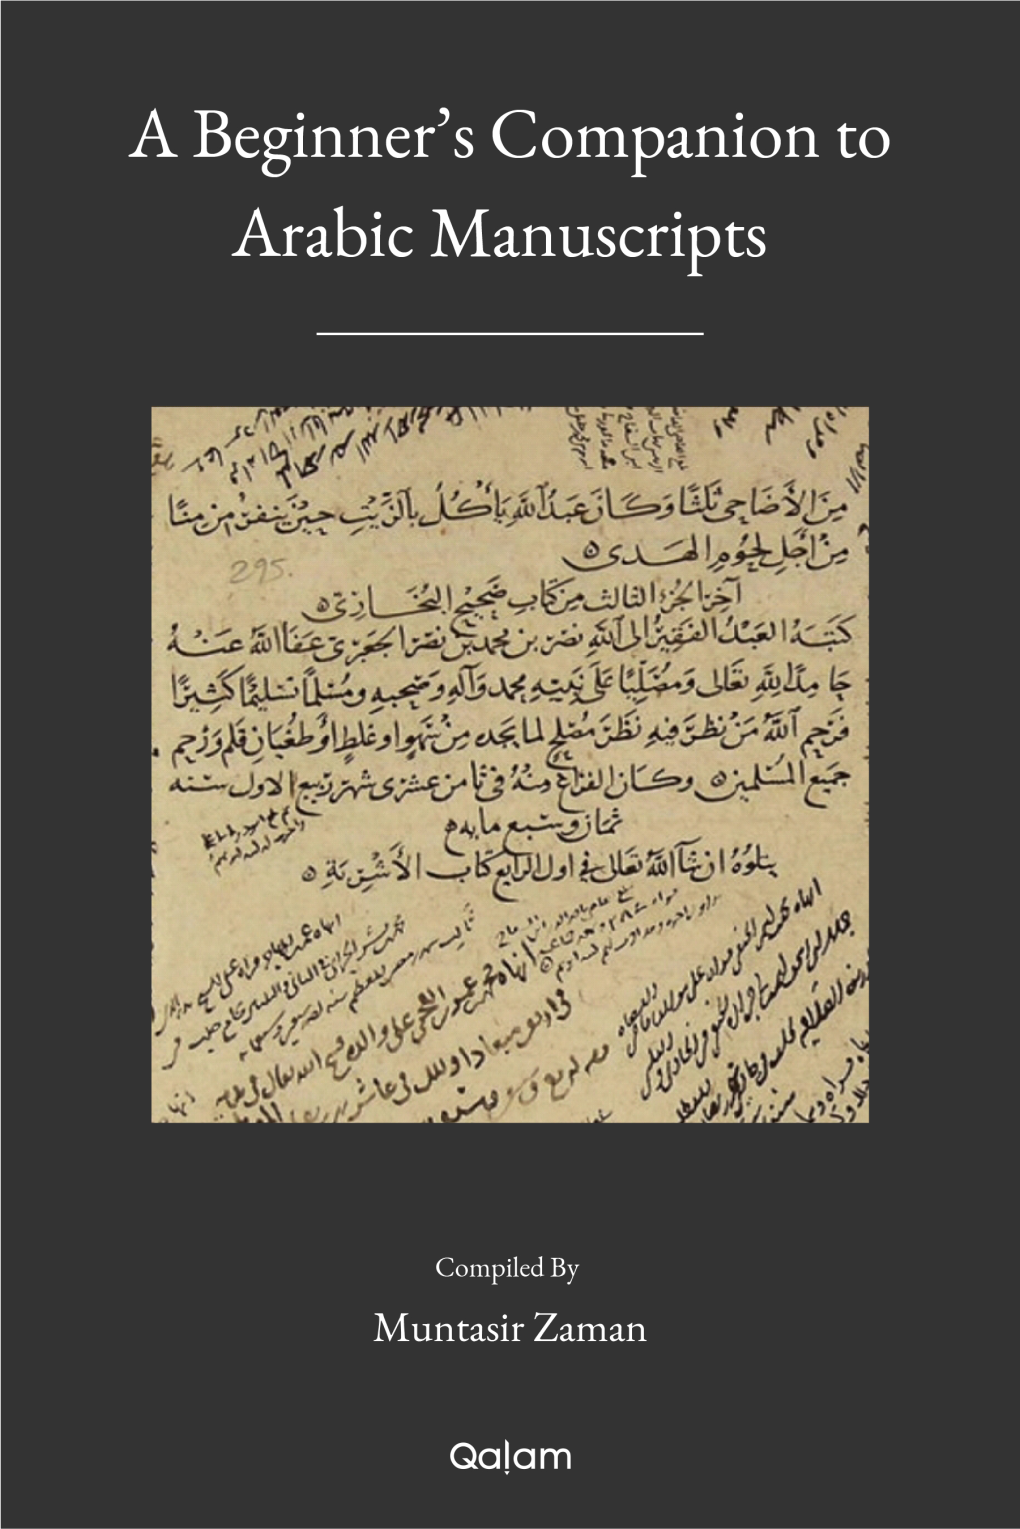 A Beginner's Companion to Arabic Manuscripts